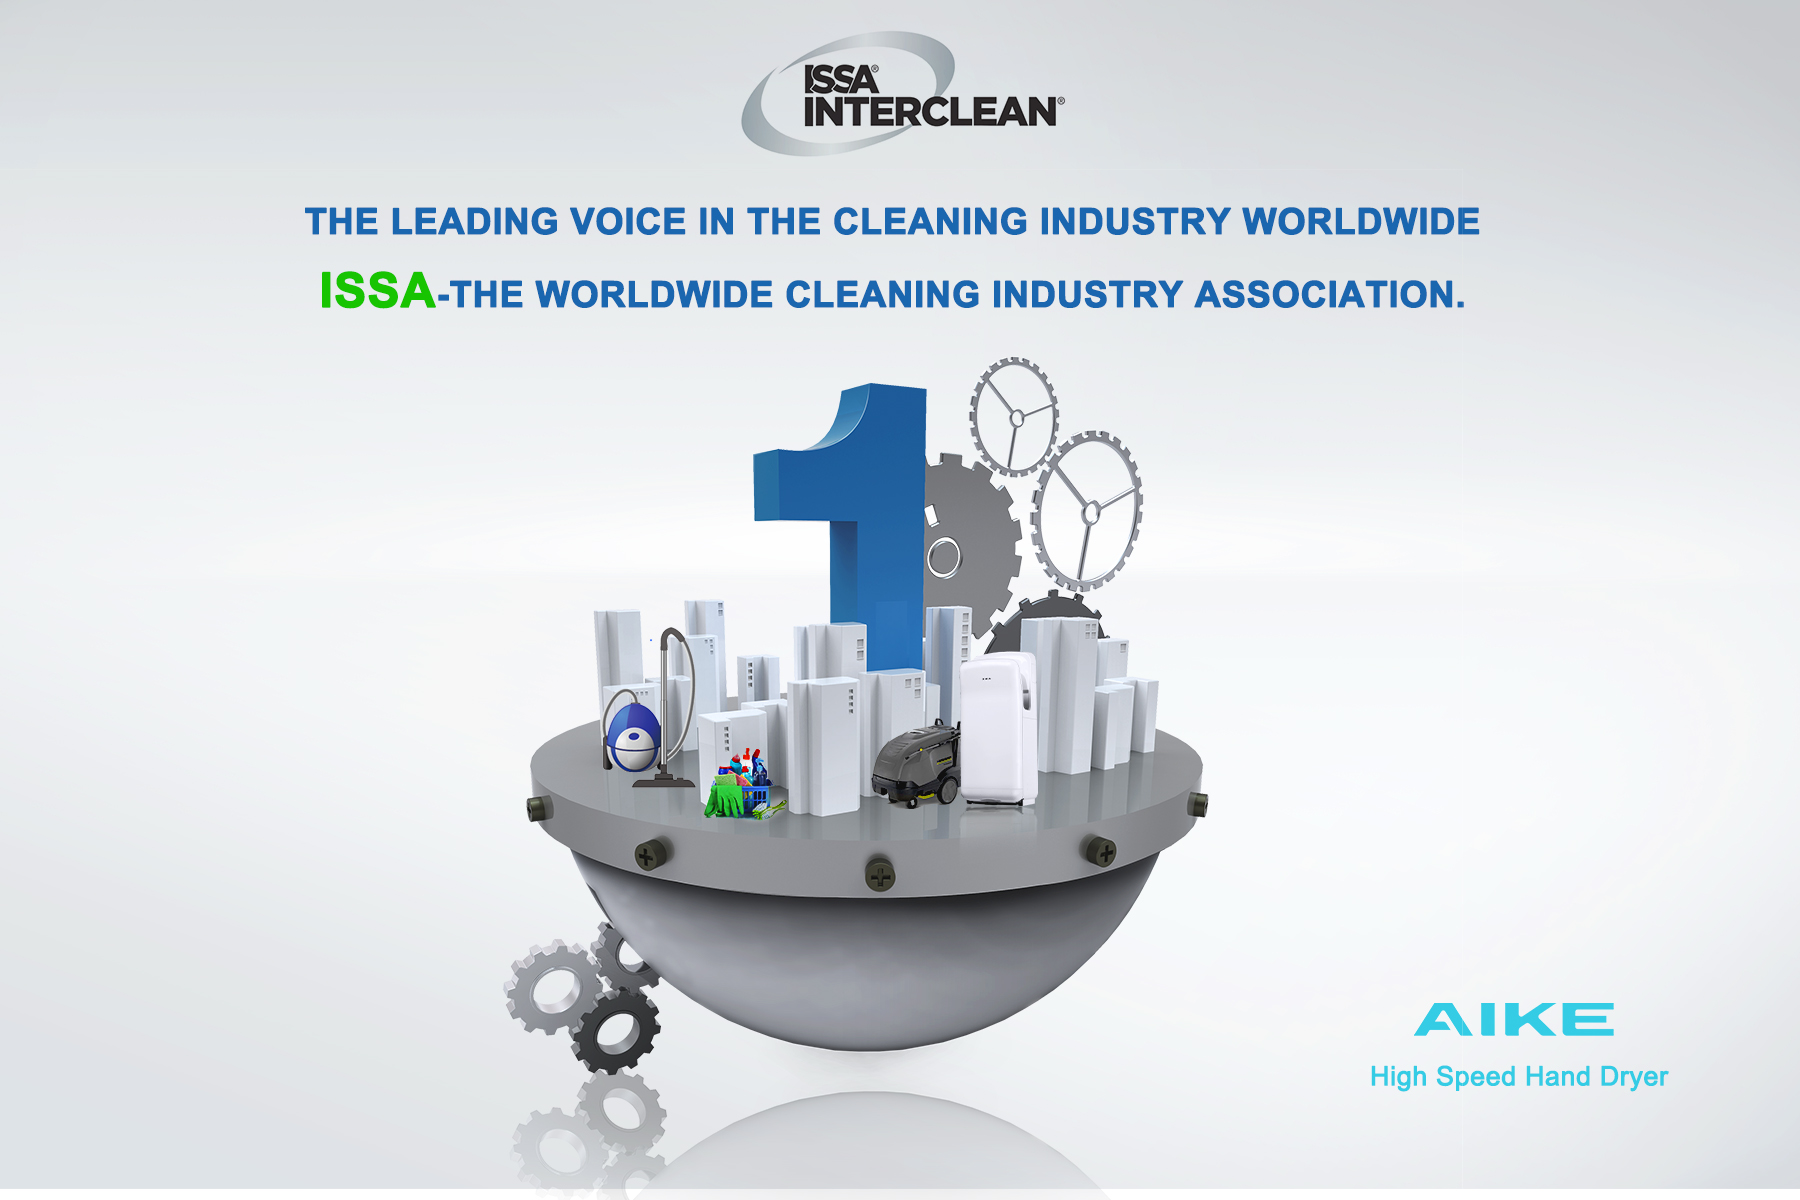 Die führende Stimme in der Reinigungsbranche weltweit: ISSA - der weltweite Verband der Reinigungsindustrie.